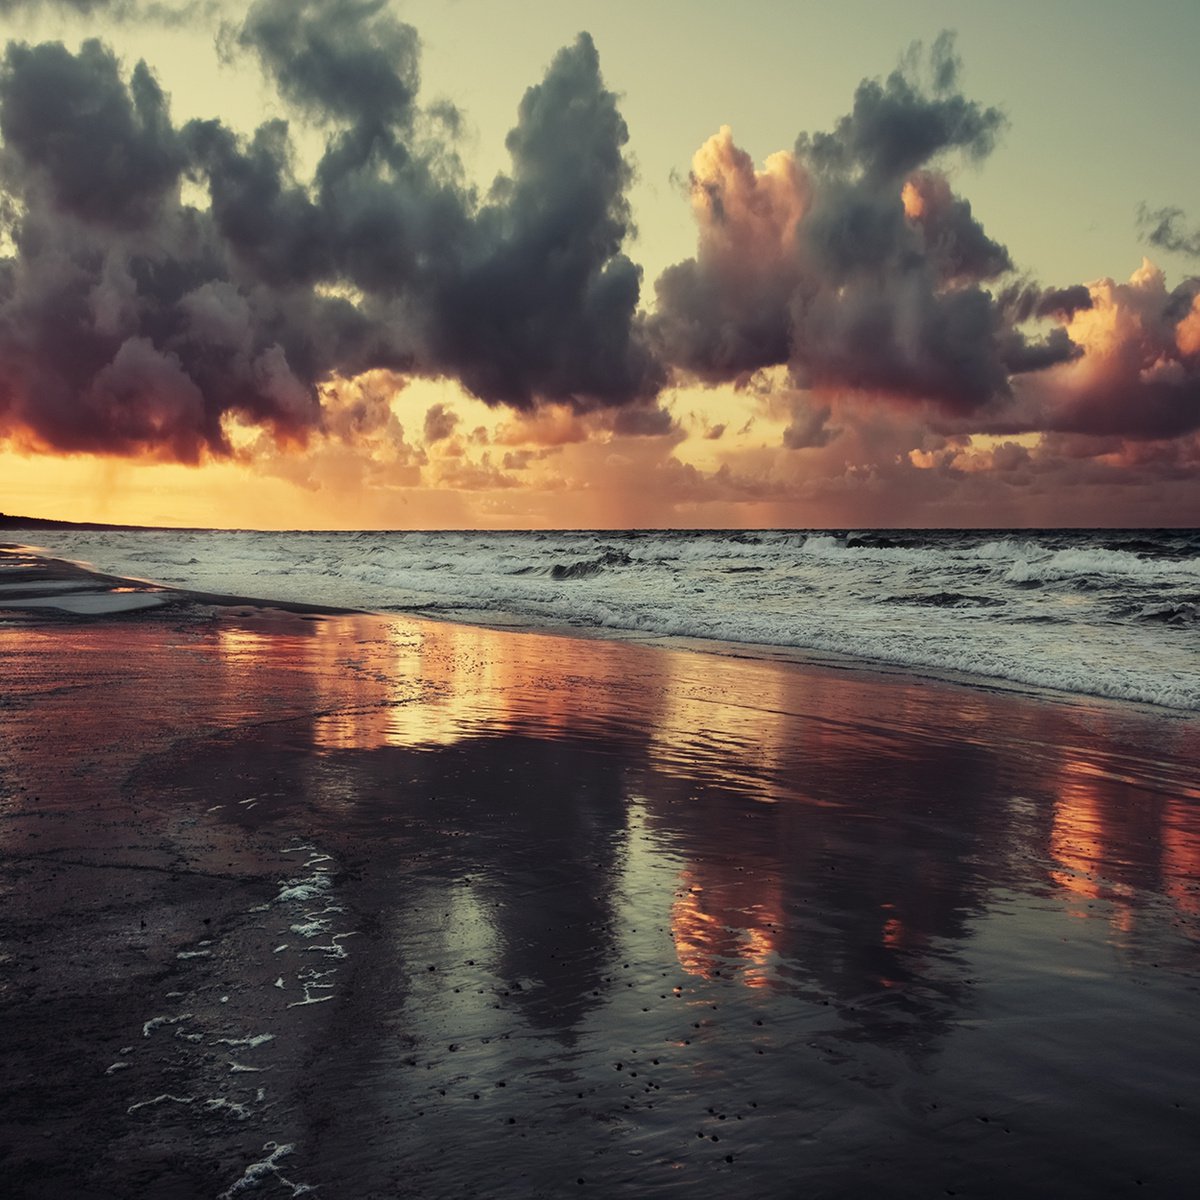 Stormy sunset by Jacek Falmur